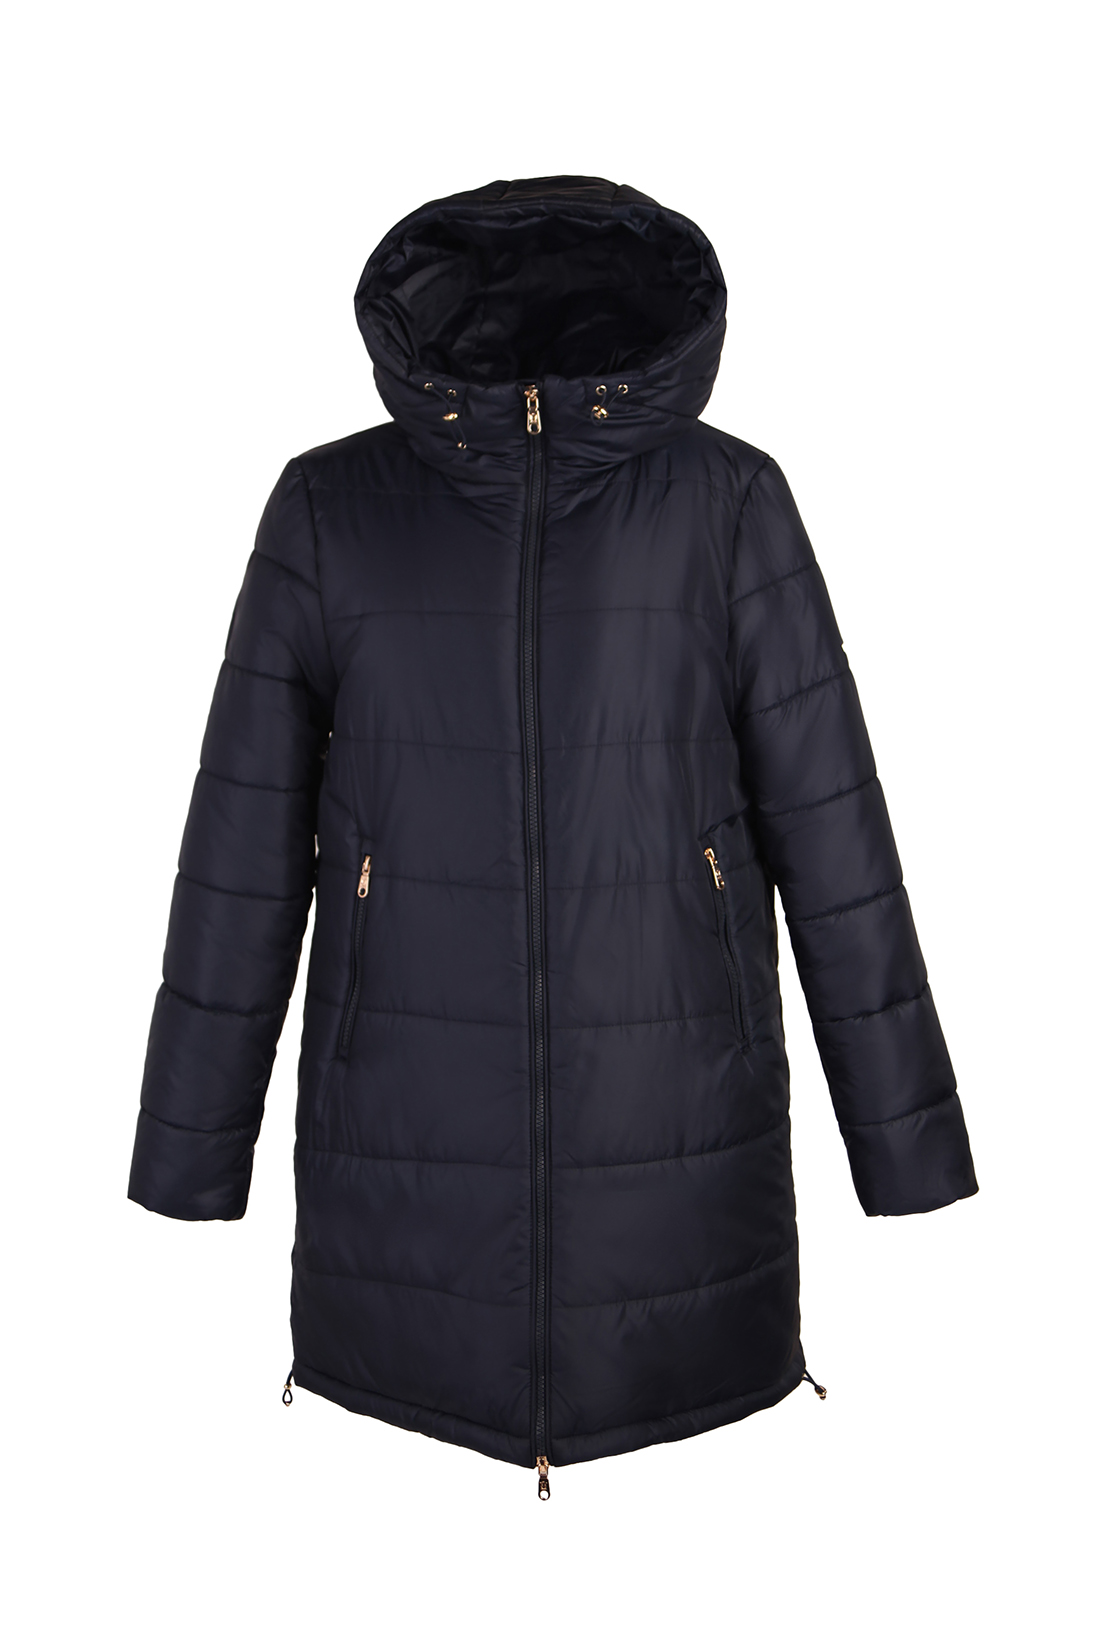 фото Утепленное пальто женское baon b031701 синее xs